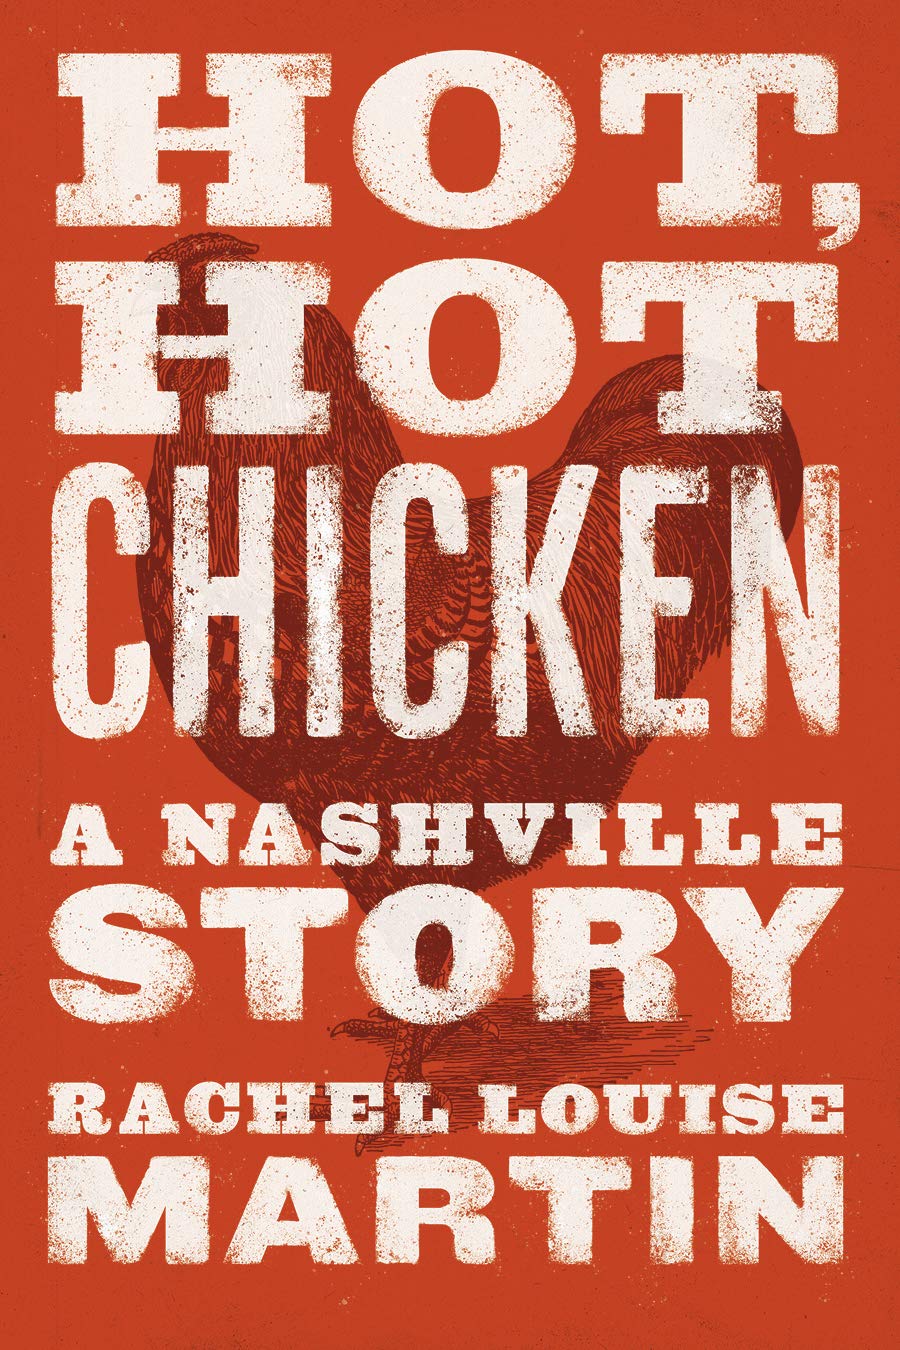 Hot, Hot Chicken: A Nashville Story (Rachel Louise Martin)